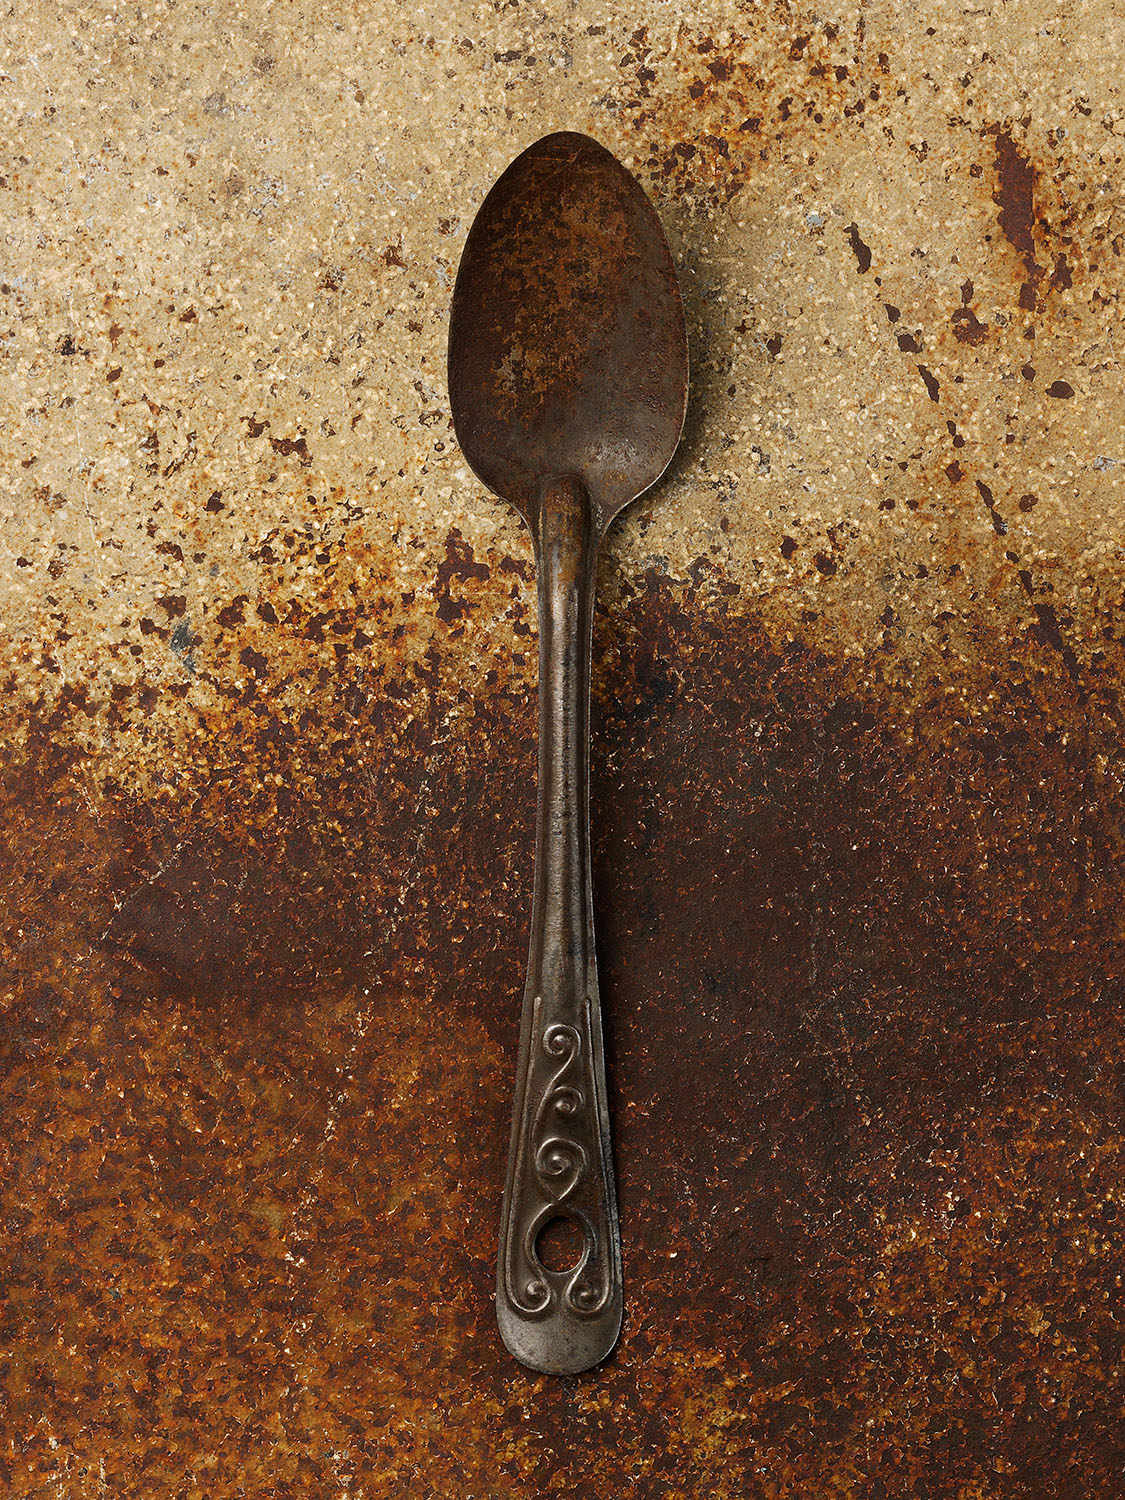 #66 Large Metal Spoon